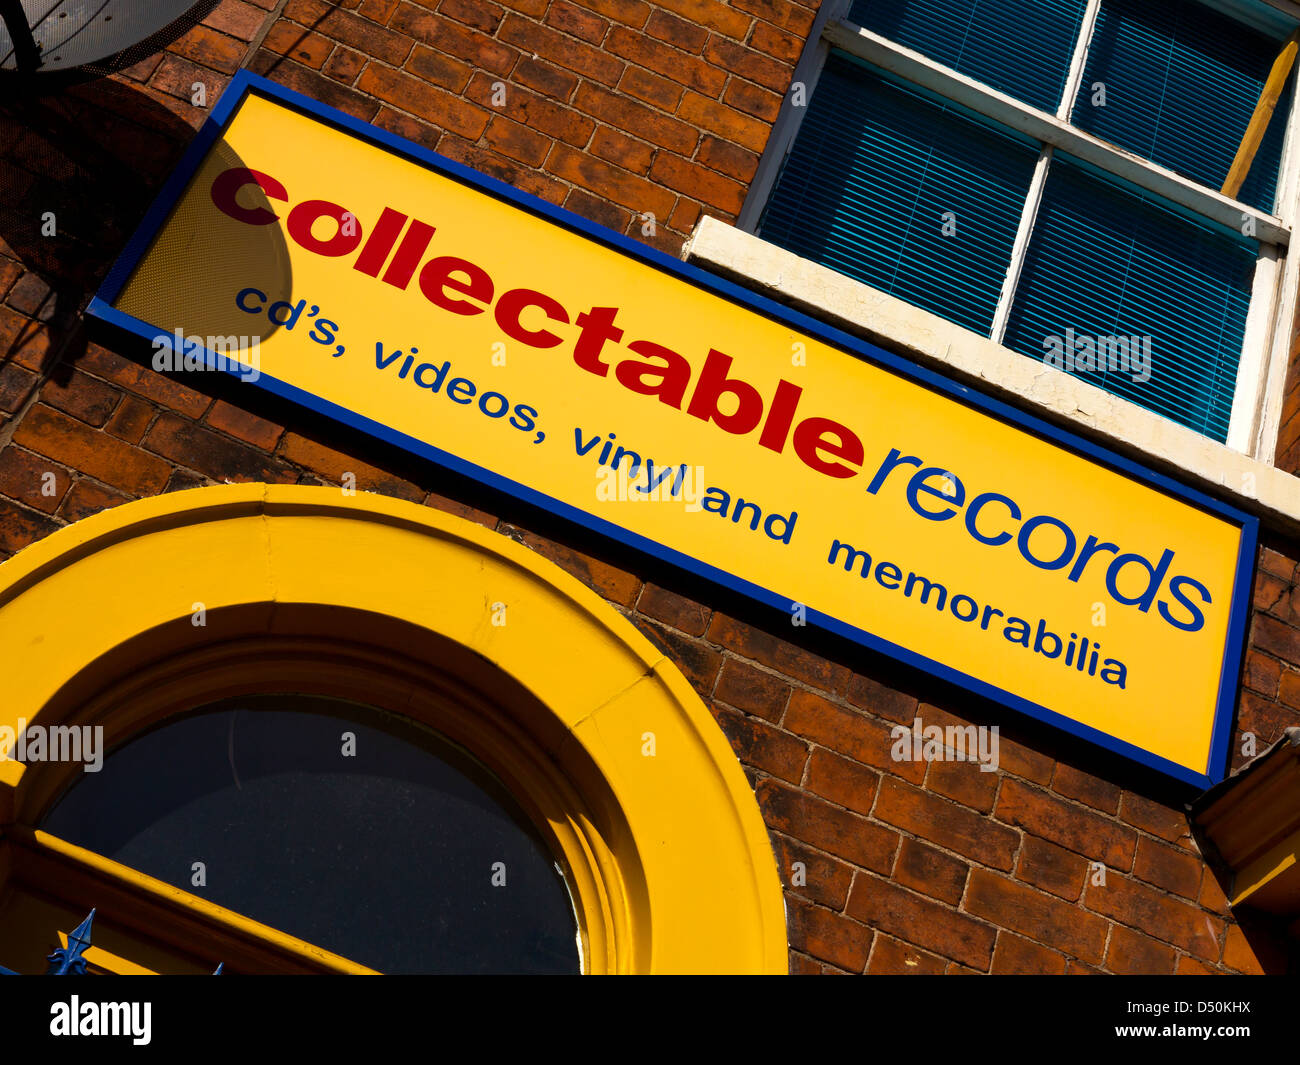 Melden Sie außen Sammlerstücke Records Shop Verkauf von secondhand Cds Vinyl und Erinnerungsstücke in Stafford England UK Stockfoto